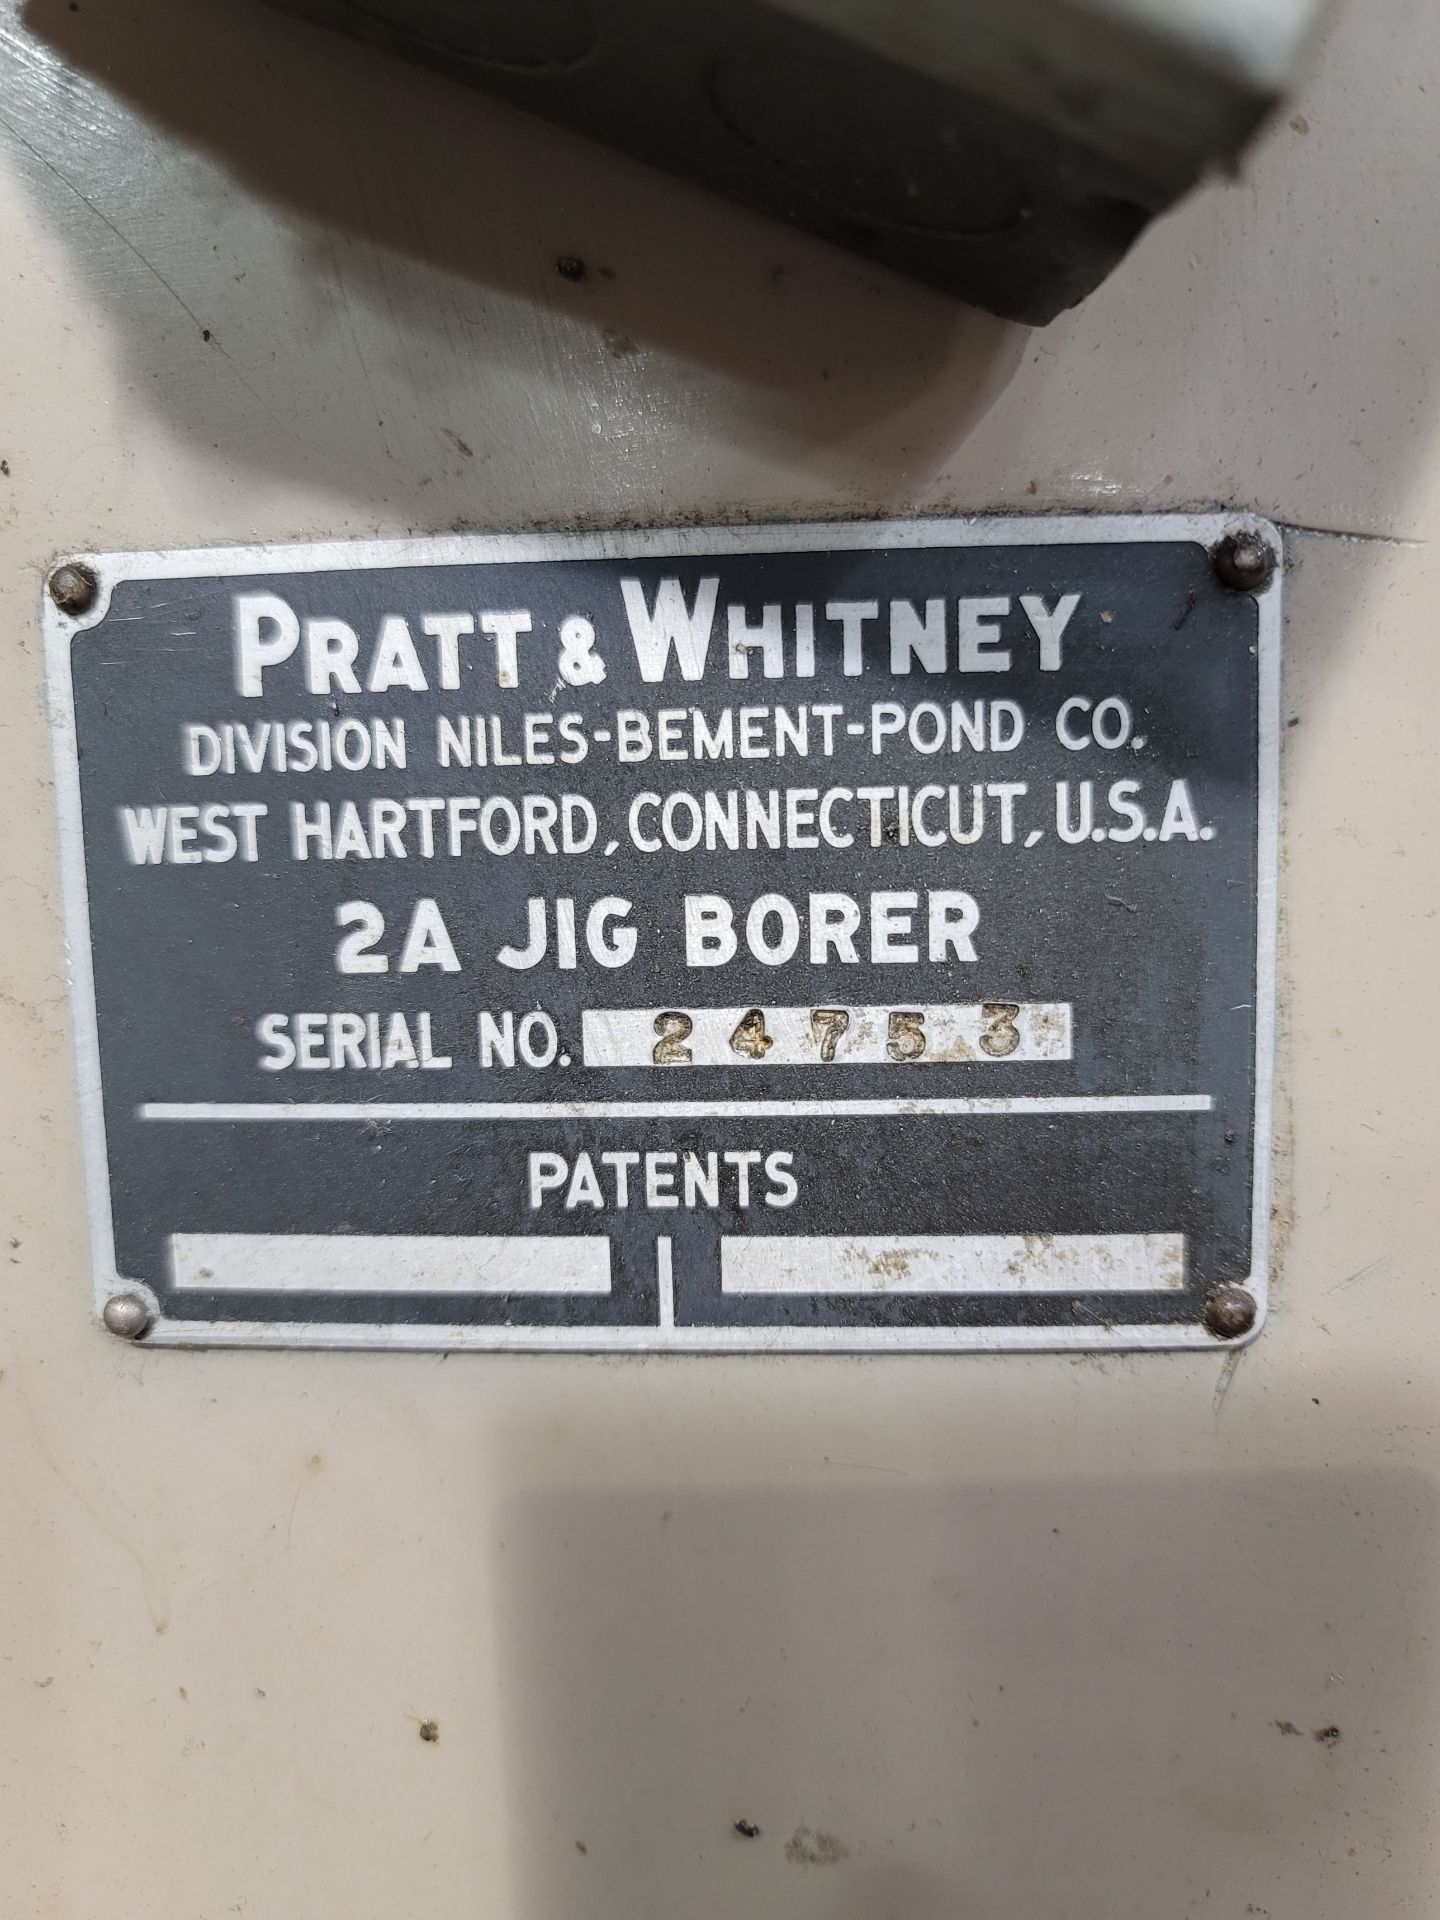 PRATT & WHITNEY 2A JIG BORER, S/N 24753 - Image 5 of 5